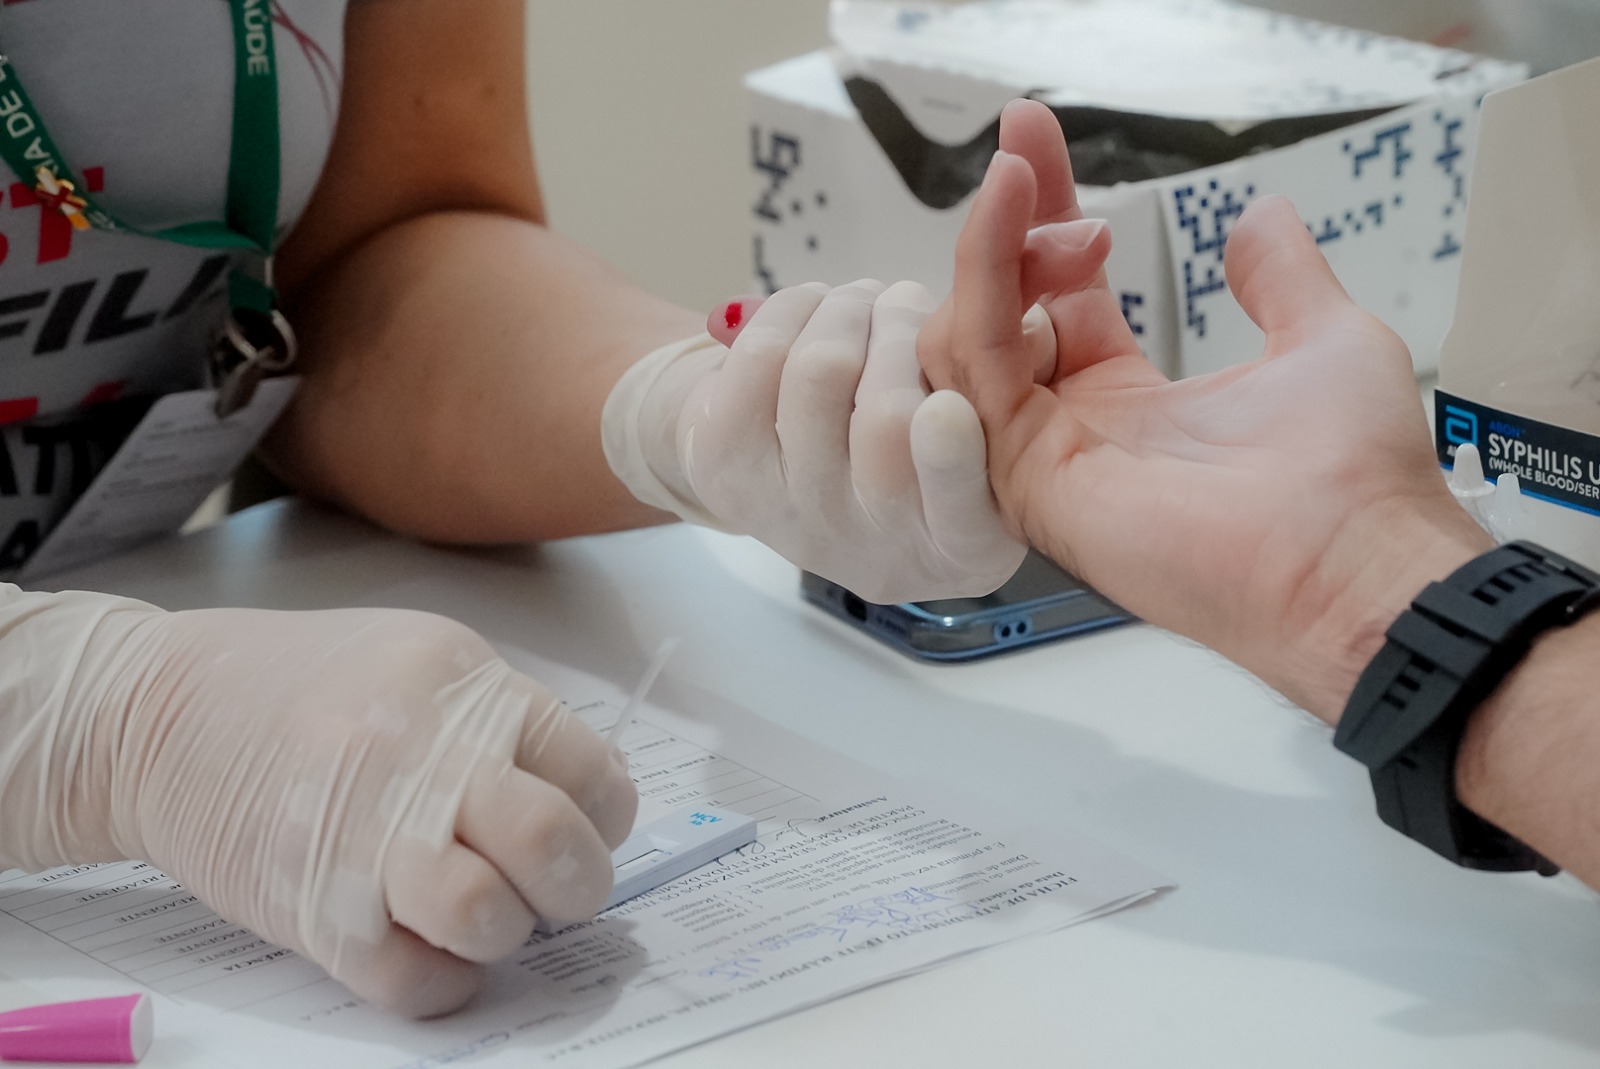 El país implementa medidas preventivas e informativas frente a las hepatitis virales